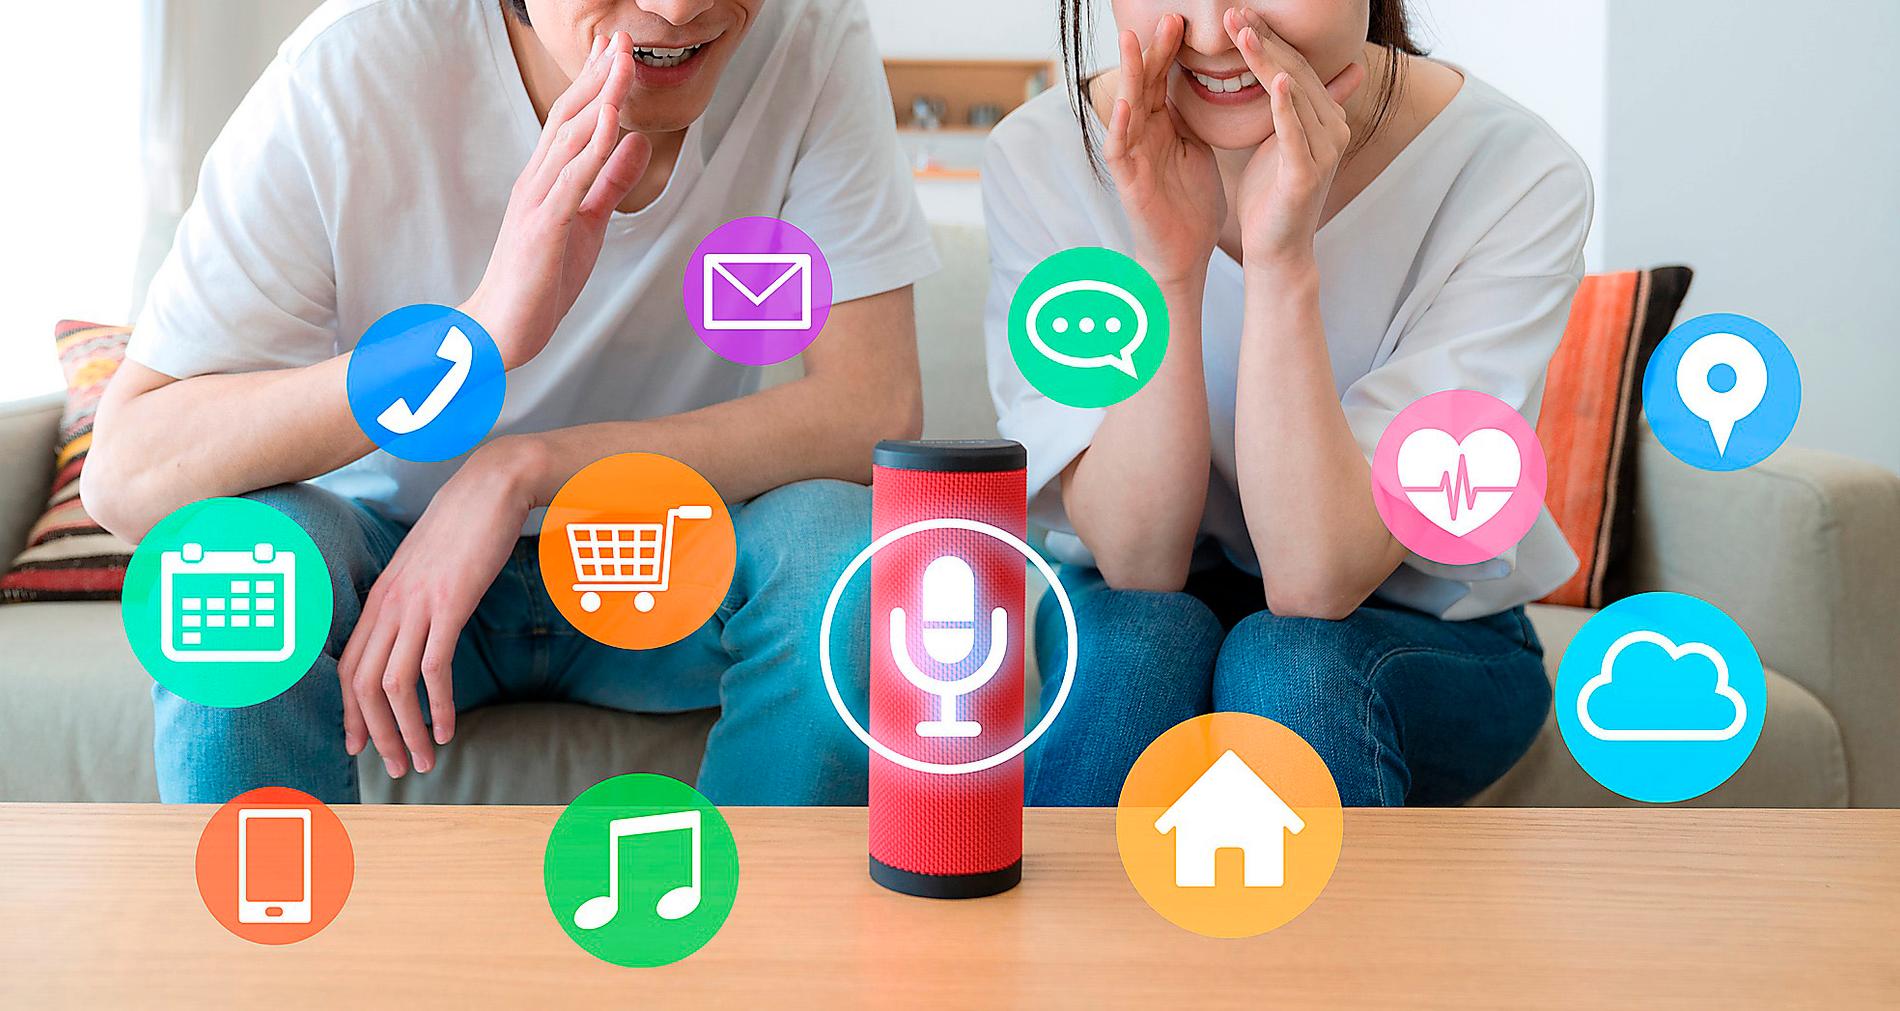 Smartboxen gör som du säger. De digitala assistenter som nu lanseras i Sverige kan styra all möjlig elektronik i hemmet – på ditt röstkommando.